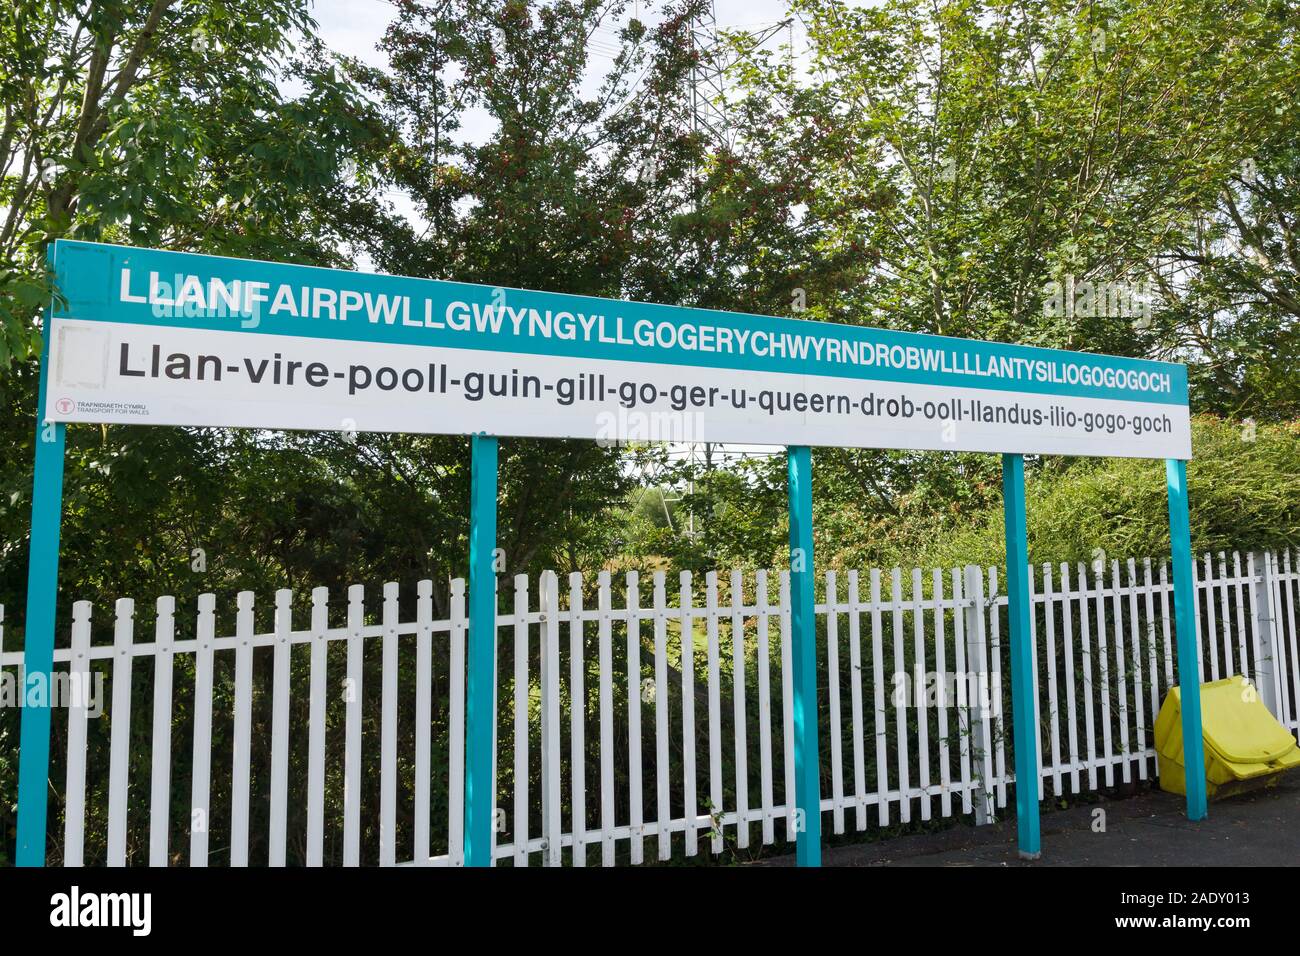 Llanfairpwllgwyngyllgogerychwyrndrobwllllantysiliogogogoch railway station listed as one of the longest place names in Europe Stock Photo